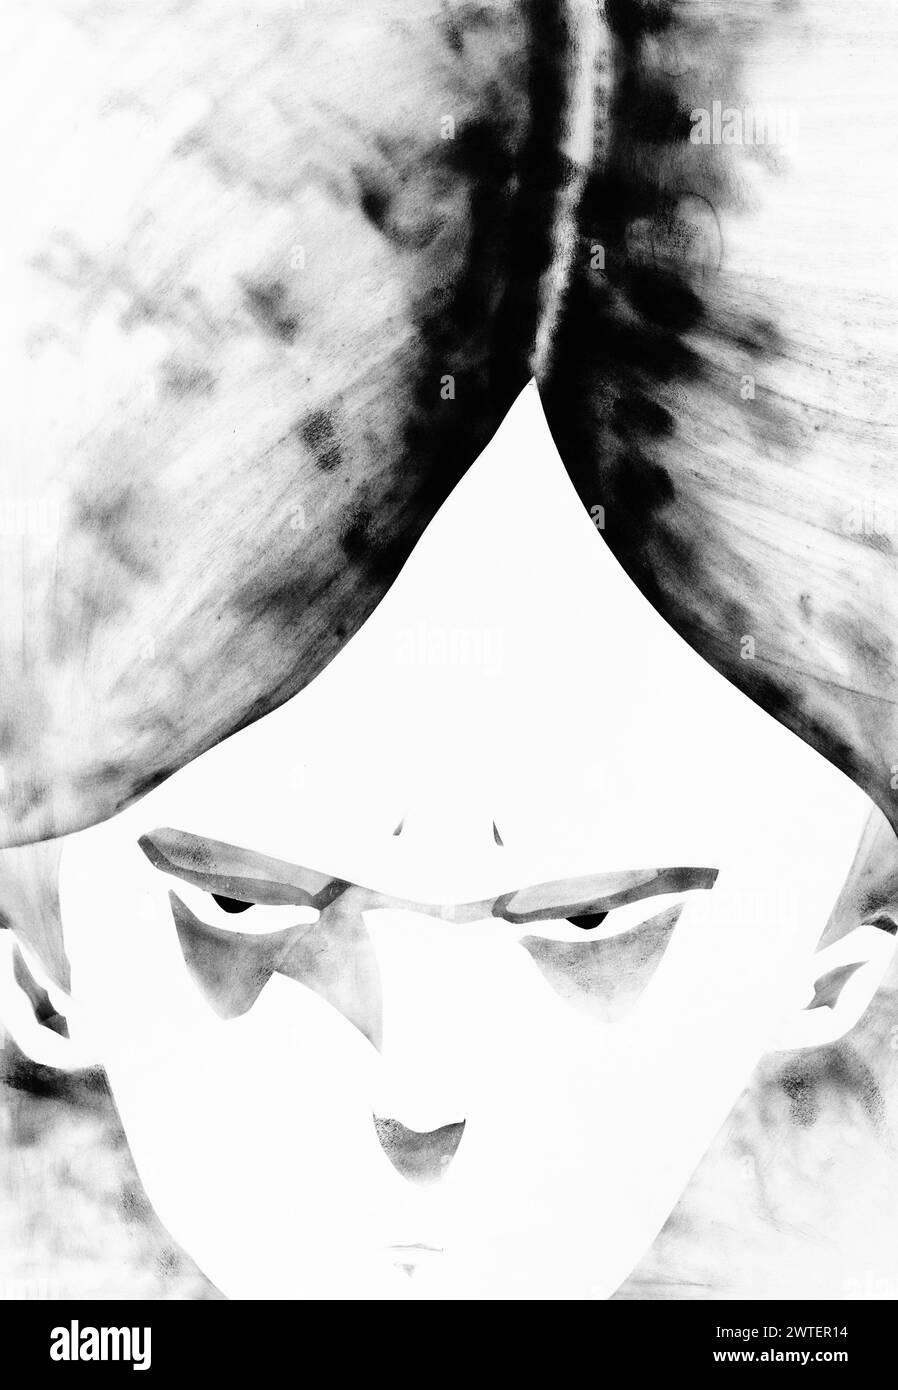 ritratto di ragazza disegnato a mano - vista dall'alto dei capelli separati e del volto arrabbiato disegnato a mano con tempera nera su carta bianca Foto Stock